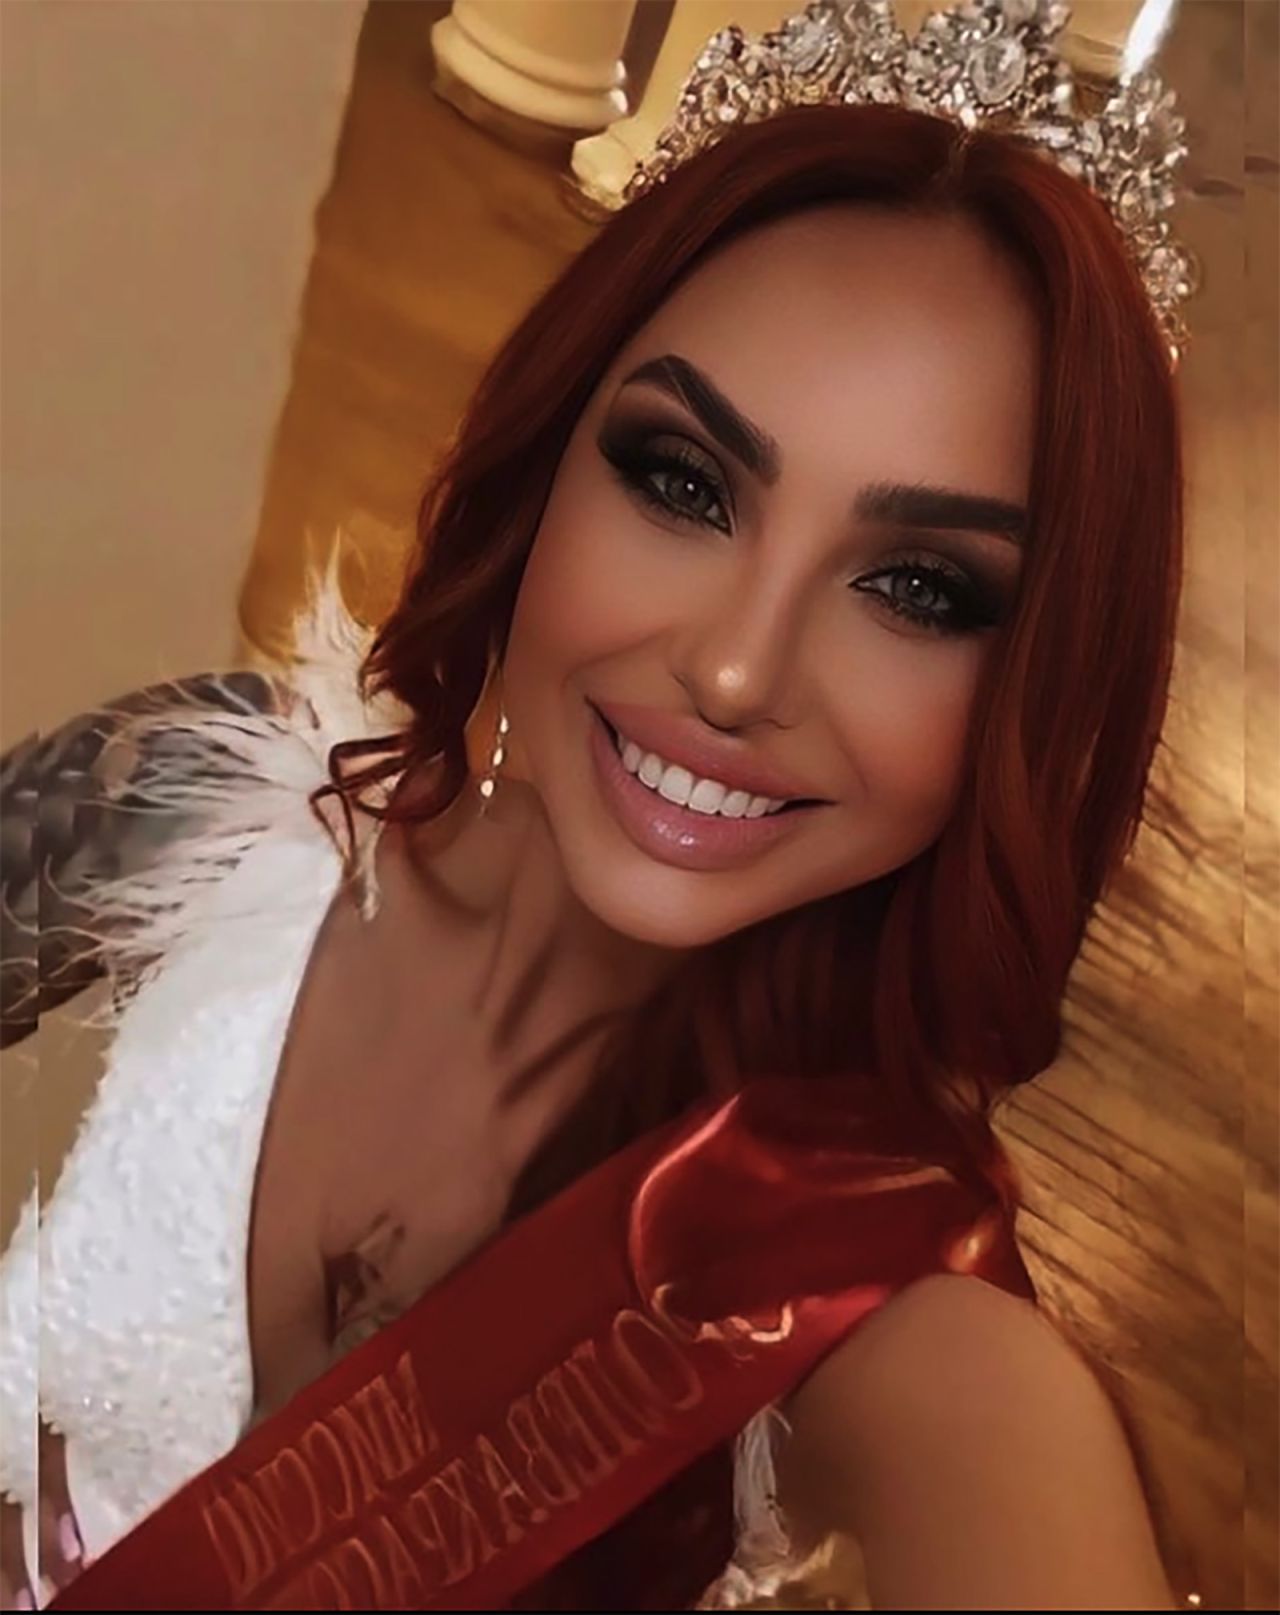 The winner of Miss Crimea 2022 Olga Valeeva poses for an Instagram selfie.